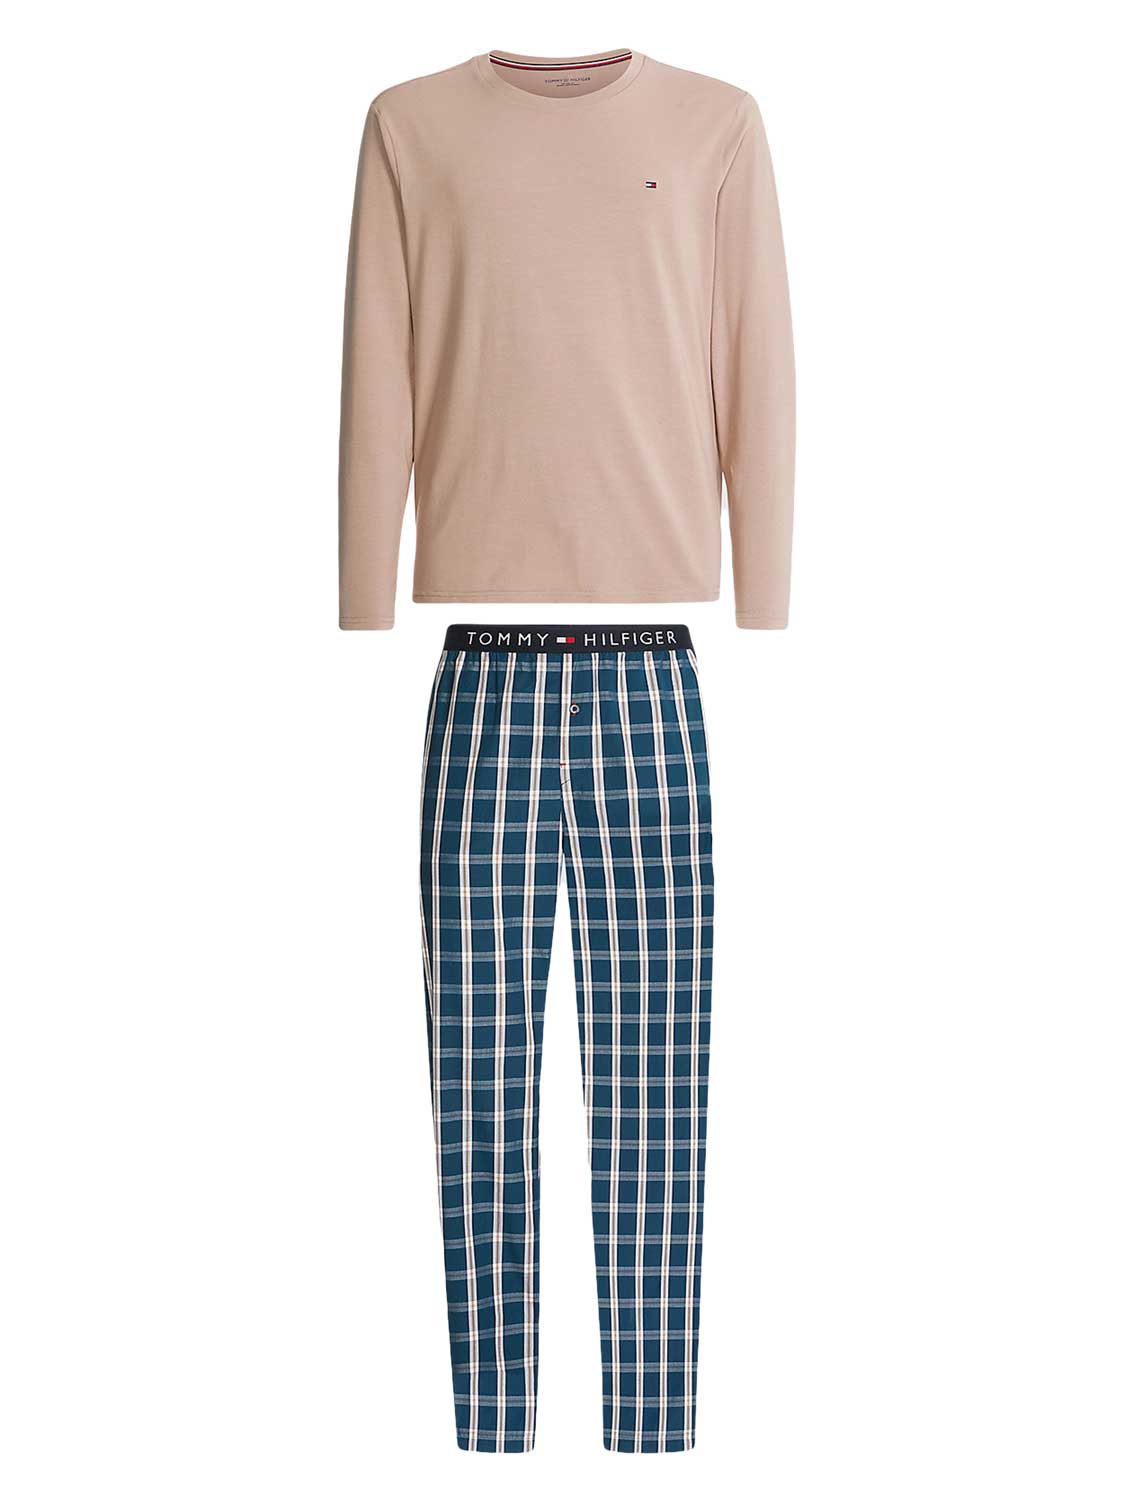 Tommy Hilfiger Pyjama lange broek 'Blue'/'Brown' Katoen L